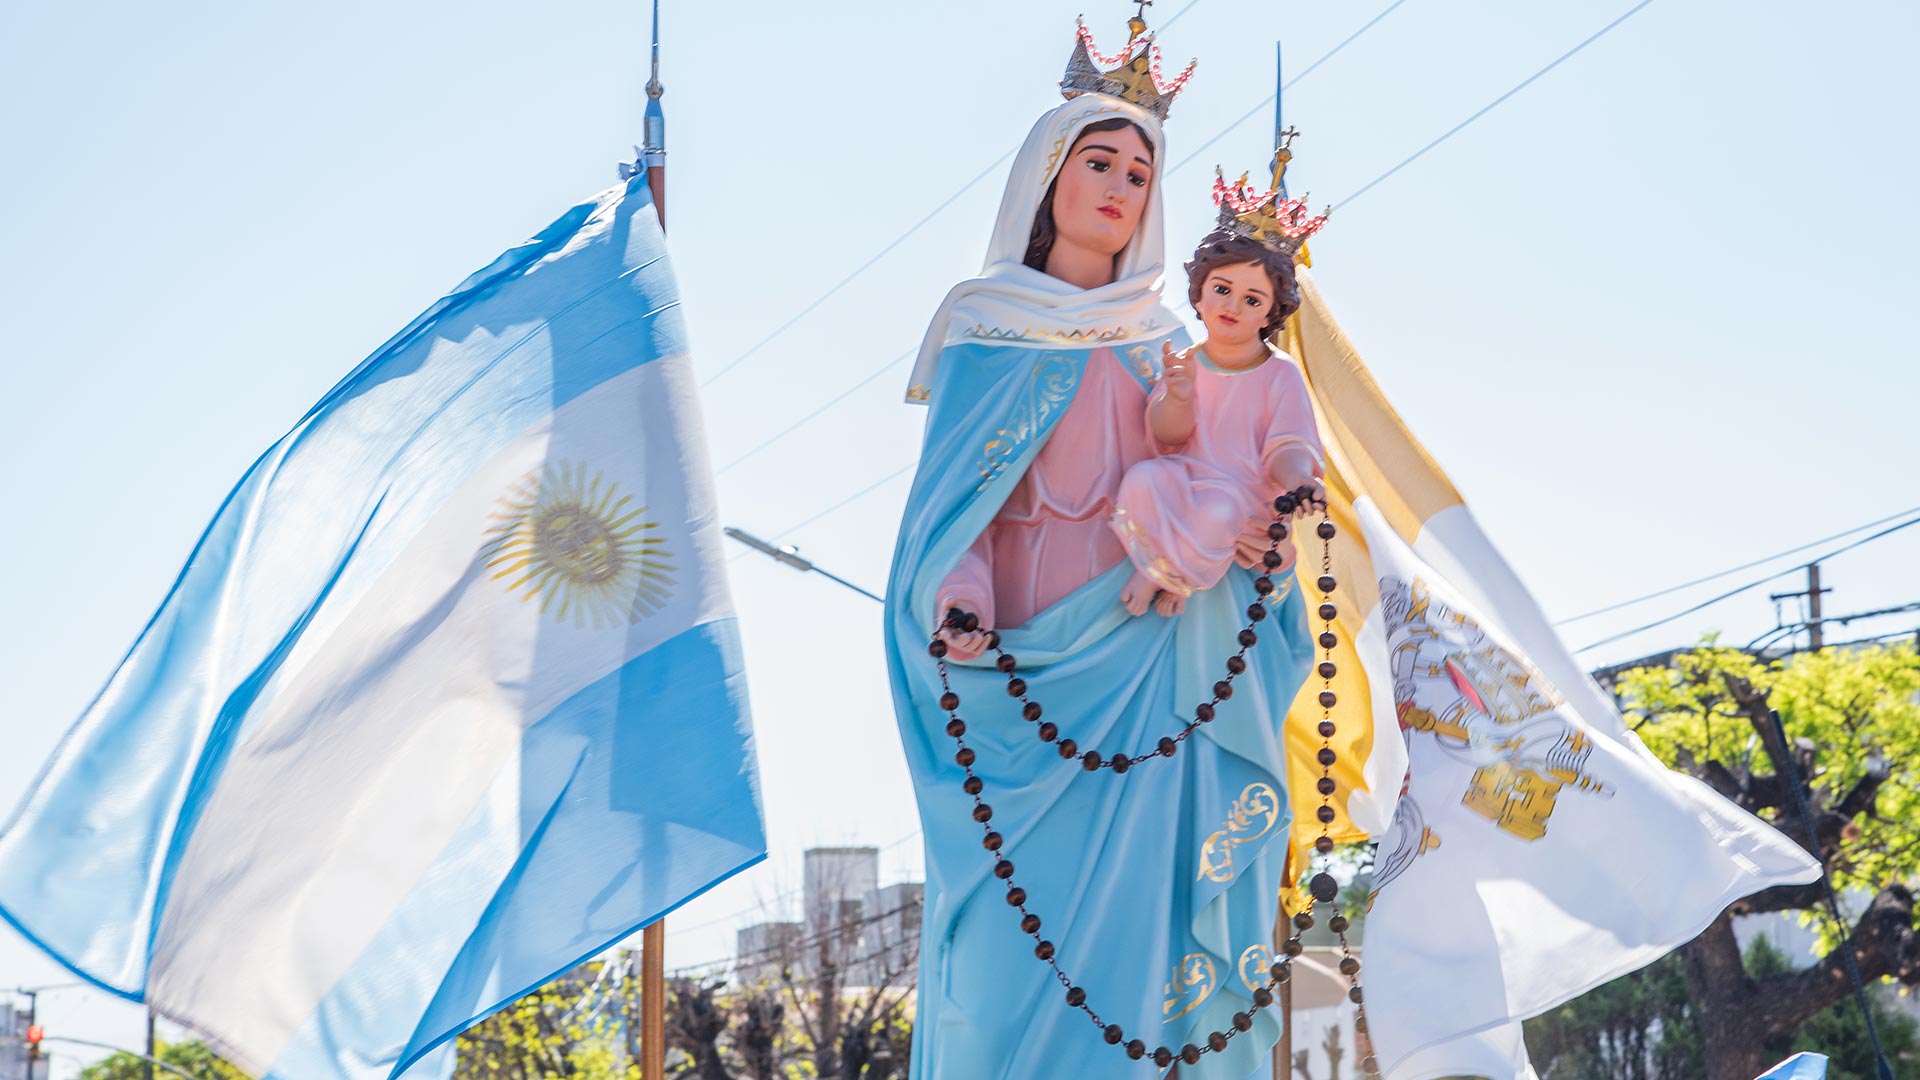 Día de la Virgen de San Nicolás: la historia de la aparición desde atrae miles - Infobae